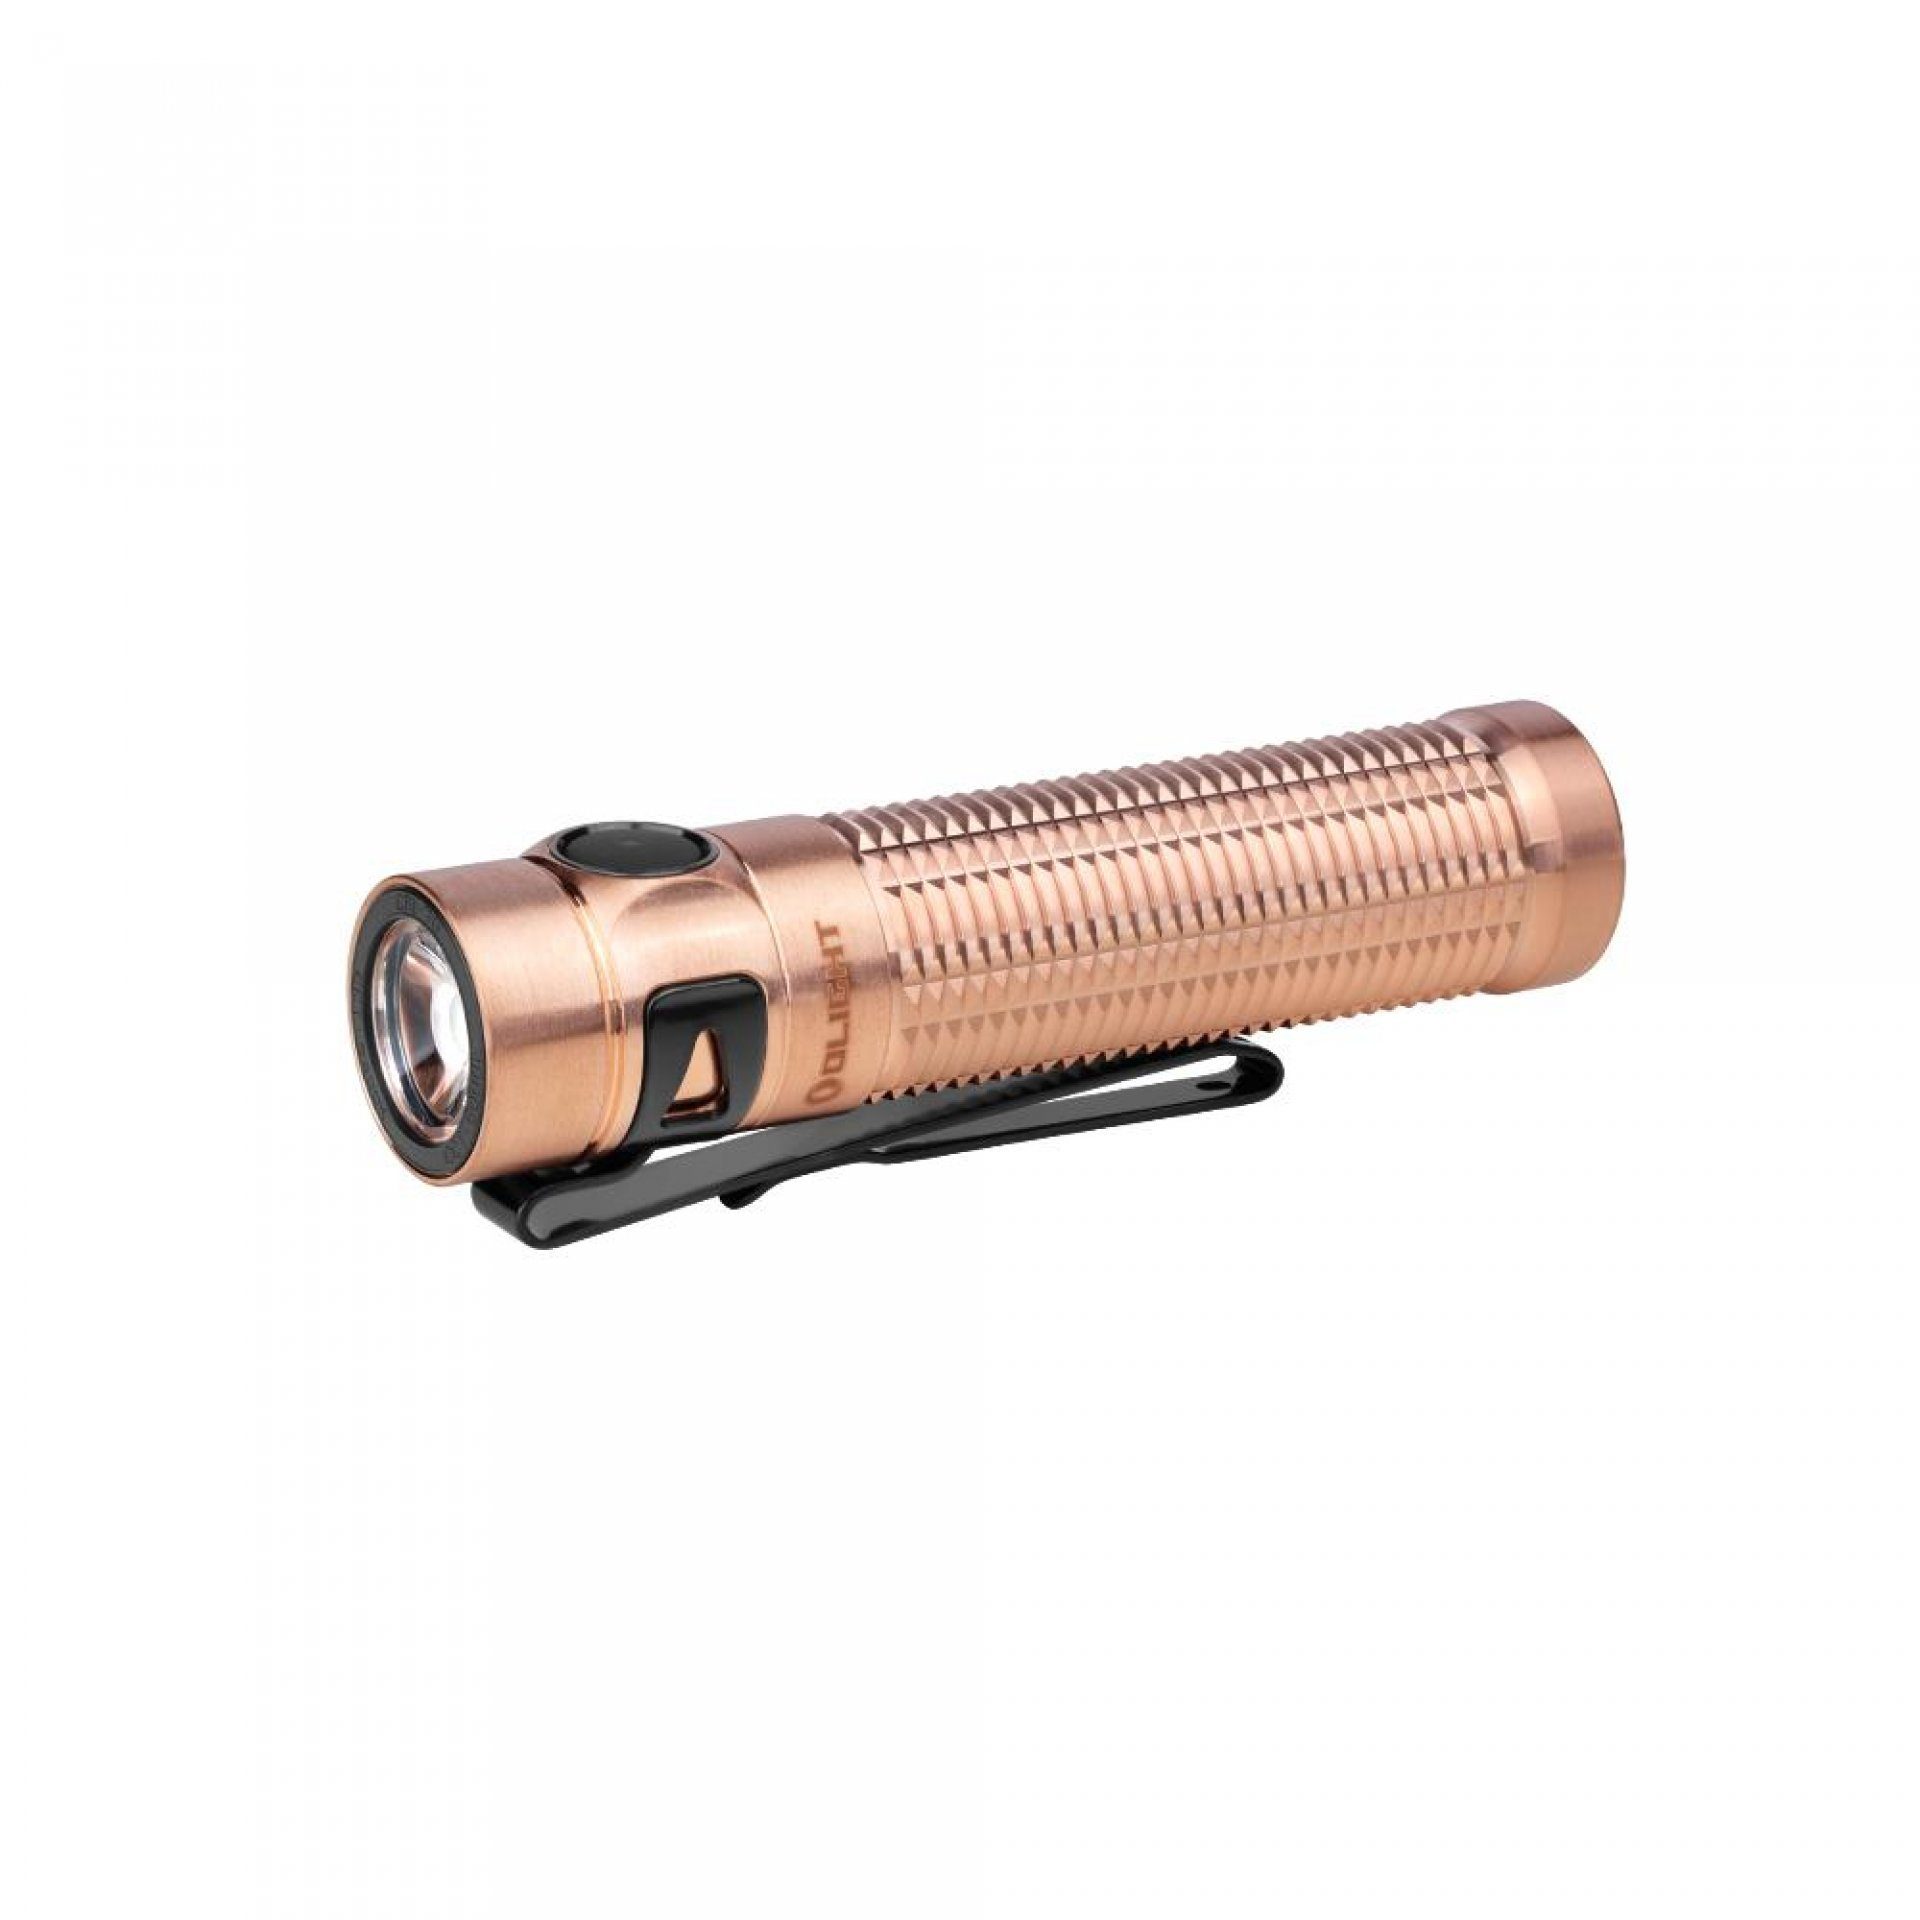 OLIGHT Taschenlampe Baton 3 Pro Kaltweiß LED Taschenlampe, Extrem Hell 1500 Lumen, Extrem Hell 1500 Lumen 175 Meter, USB aufladbar, mit 6 Lichtmodi Cu